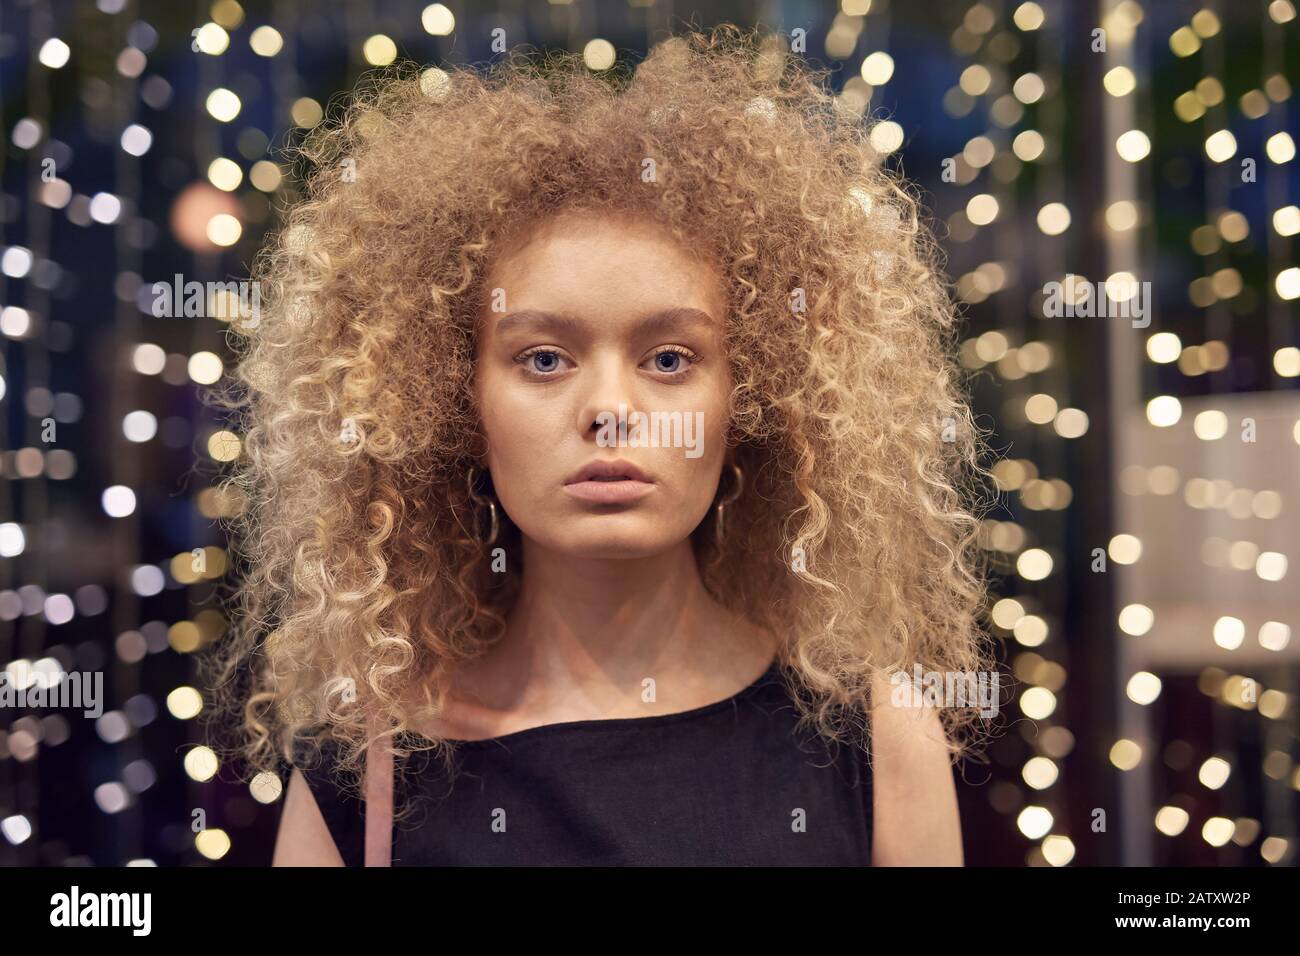 Ritratto di giovane modello di moda con capelli biondi curly guardando la fotocamera con luci sullo sfondo Foto Stock